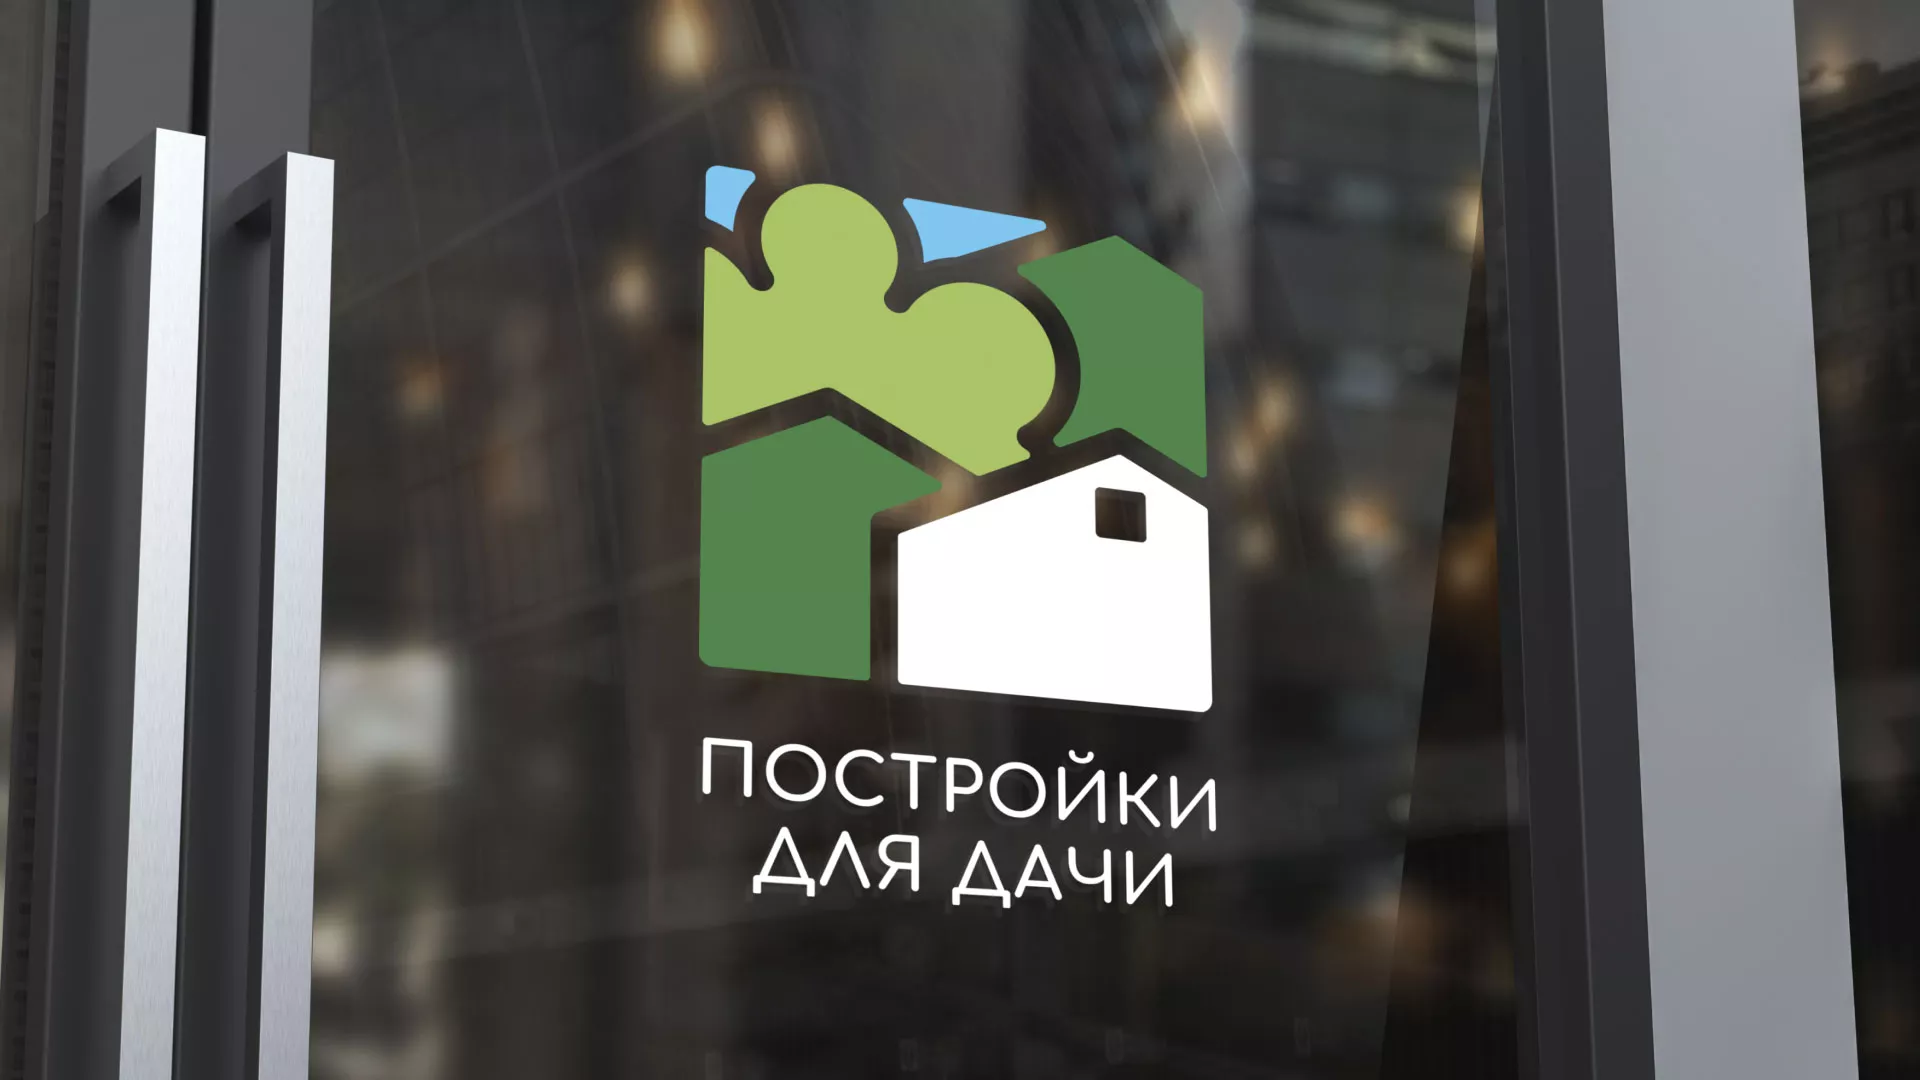 Разработка логотипа в Воскресенске для компании «Постройки для дачи»